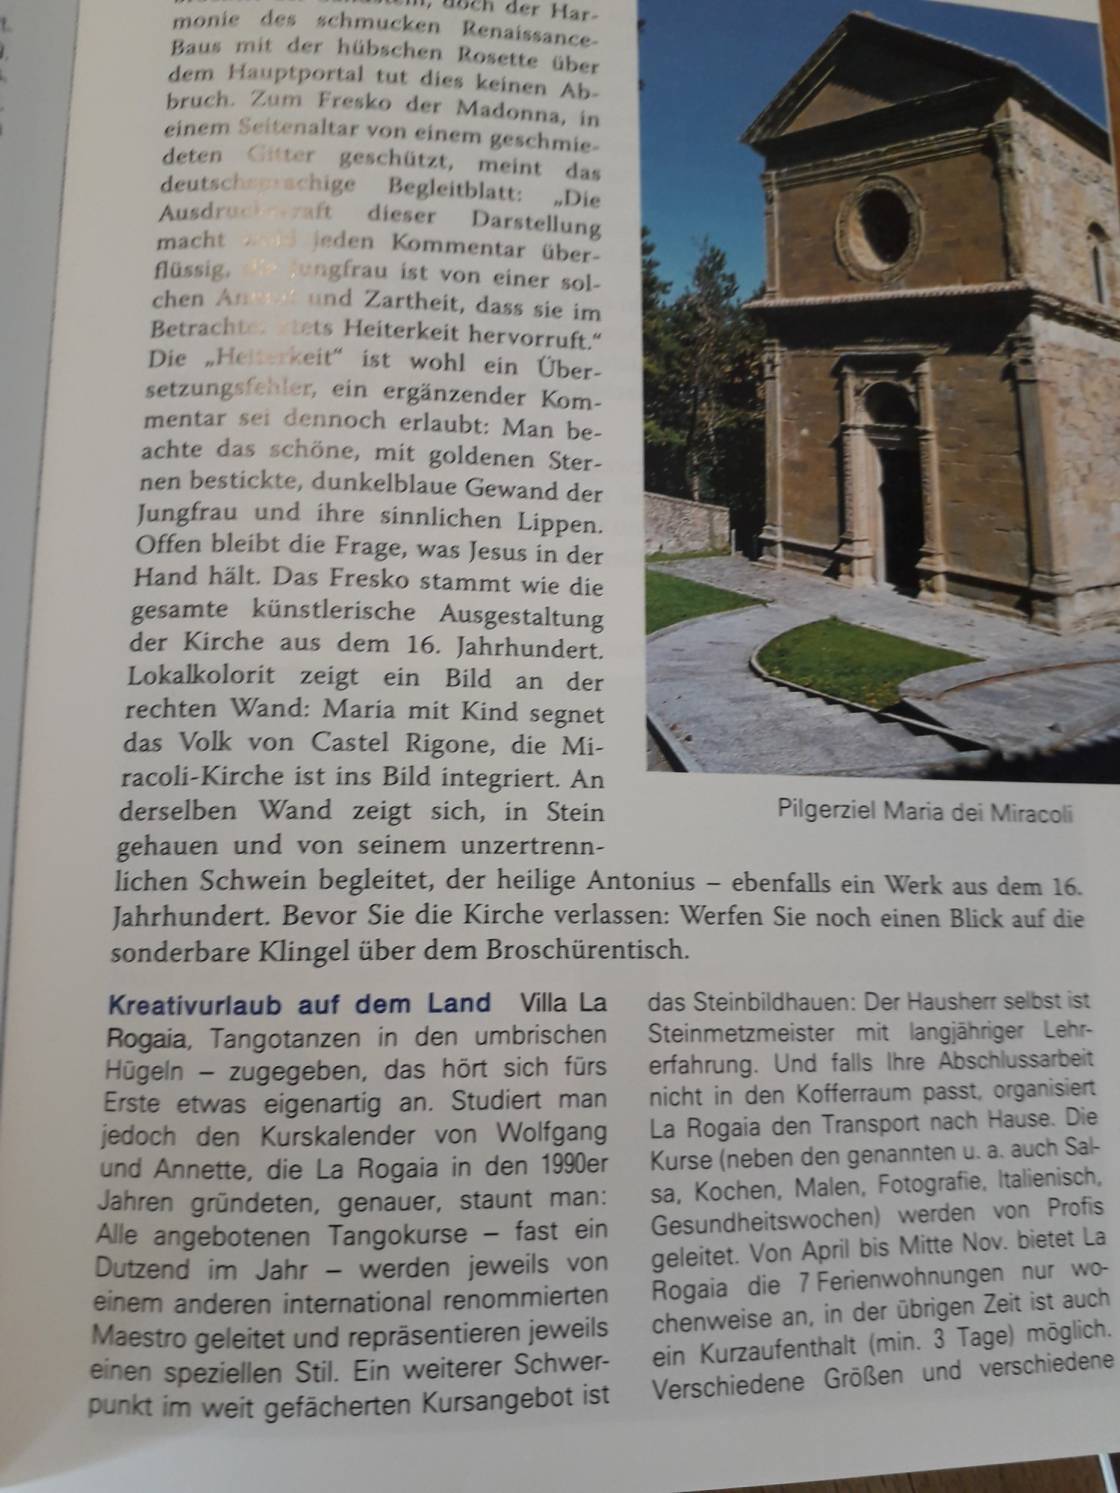 Text über Rogaia im Reiseführer "Umbrien", Müller-Verlag, 6. Auflage 2016, S. 123